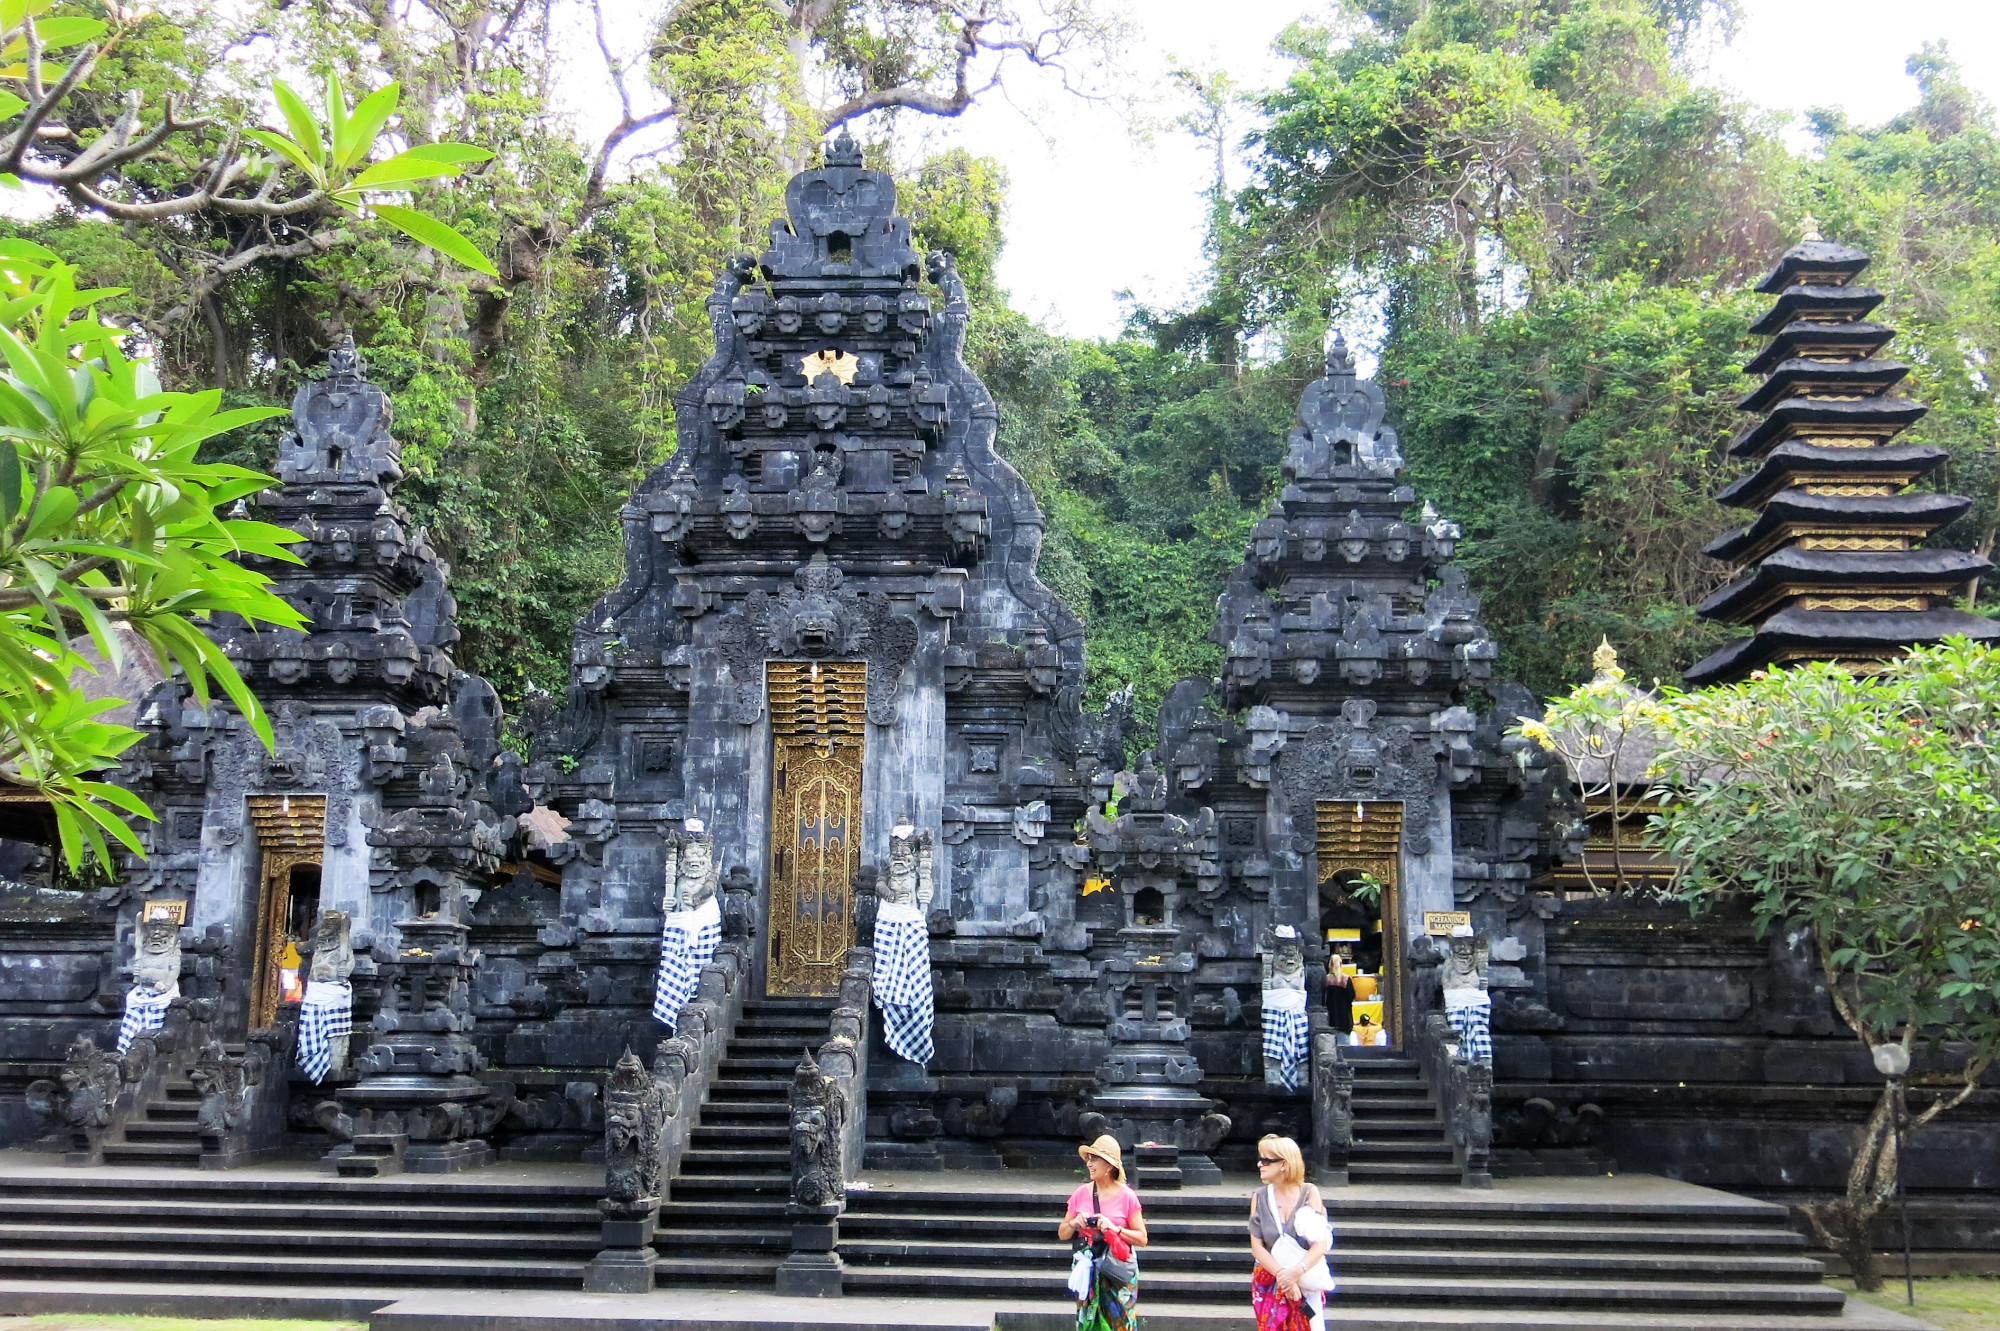 Goa Lawah Temple, Индонезия